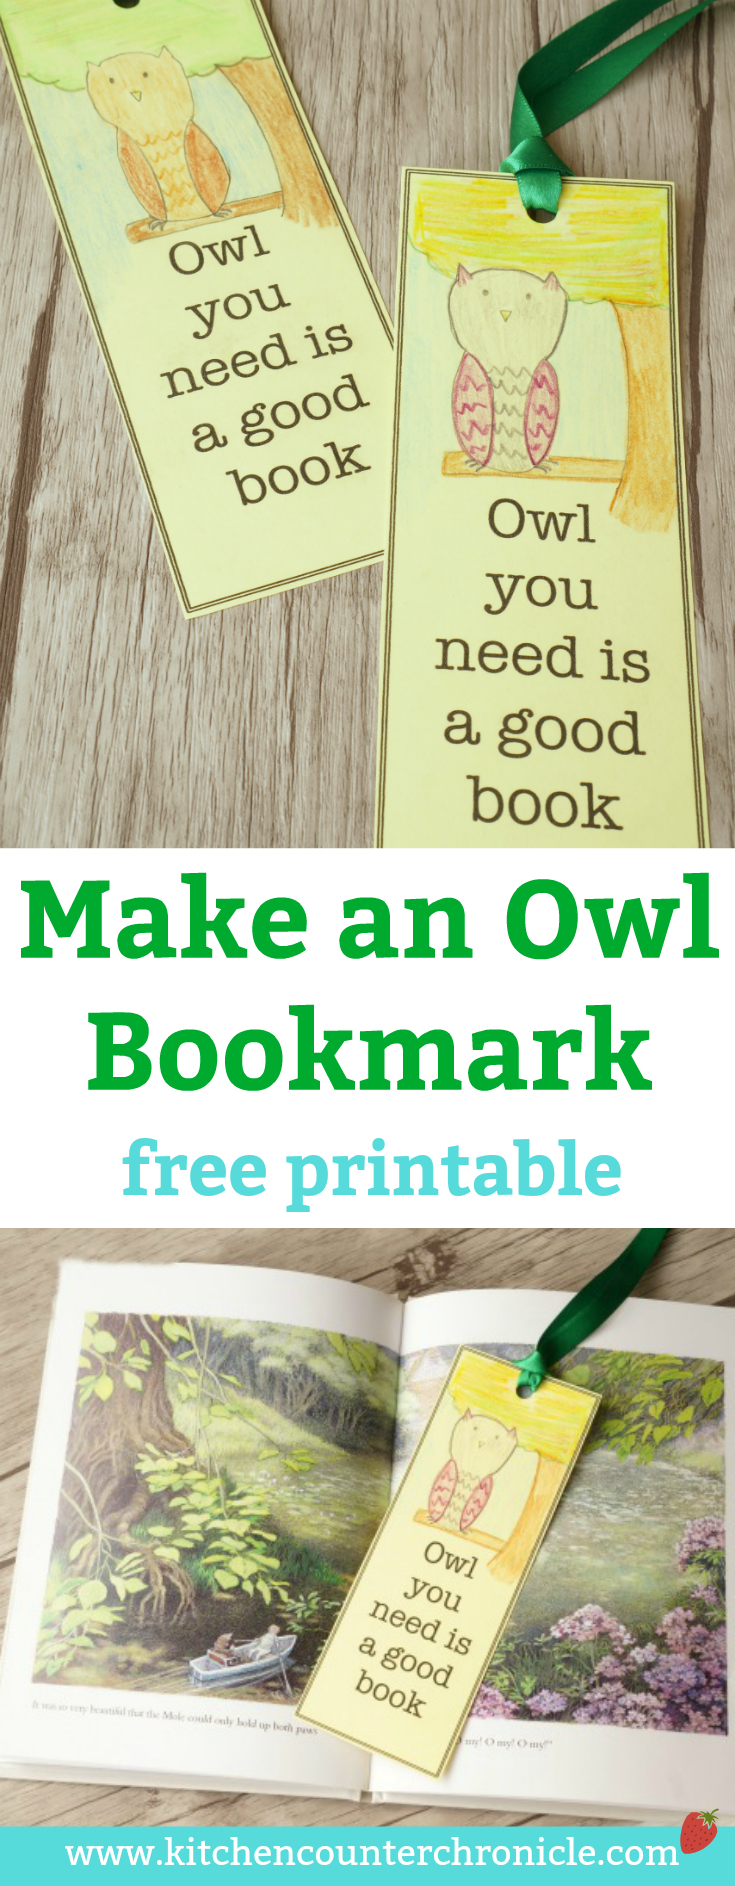 Make An Owl Bookmark - Free Printable | Kitchen Counter Chronicles - Free Printable Owl Bookmarks